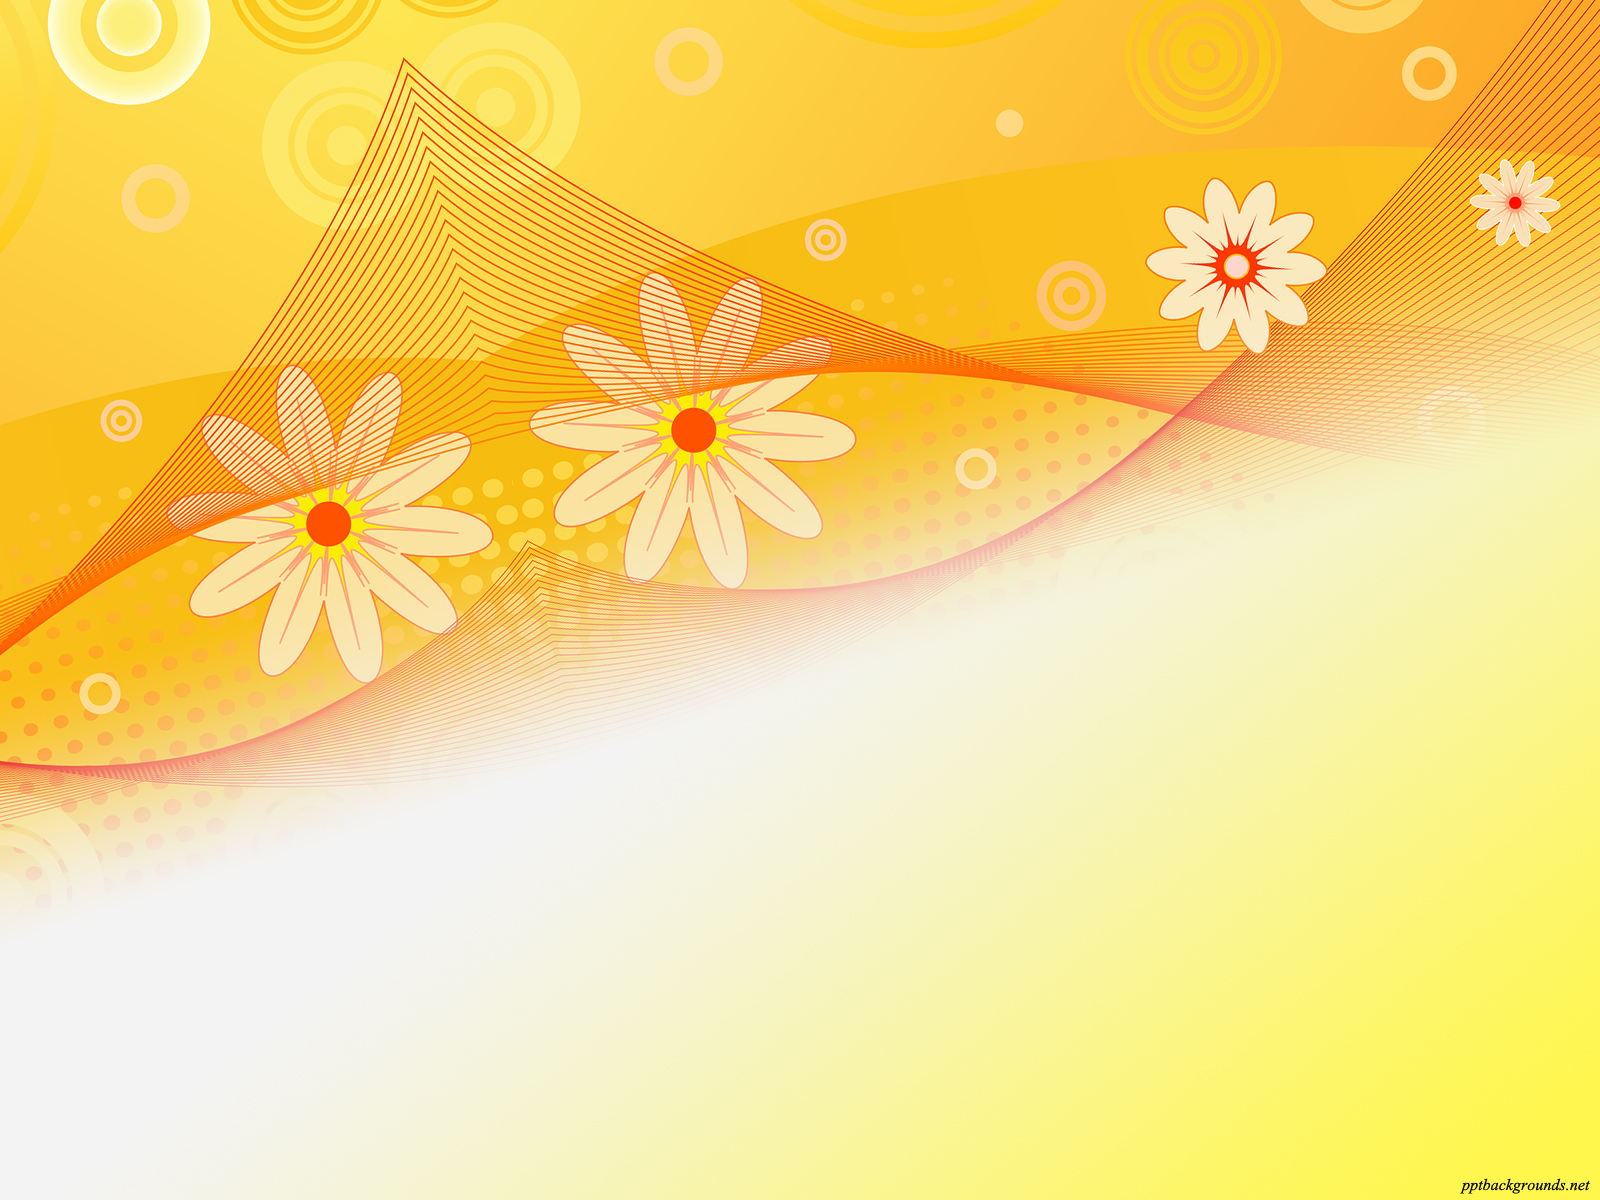 Hình nền Sunflower backgrounds sẽ làm bạn yêu thích và say đắm vào cảnh sắc tuyệt vời của những đóa hướng dương. Hãy chiêm ngưỡng vẻ đẹp tự nhiên của chúng trong bức ảnh và cảm nhận sự thư thái, giúp cho tâm trí bạn được thư giãn nhất.